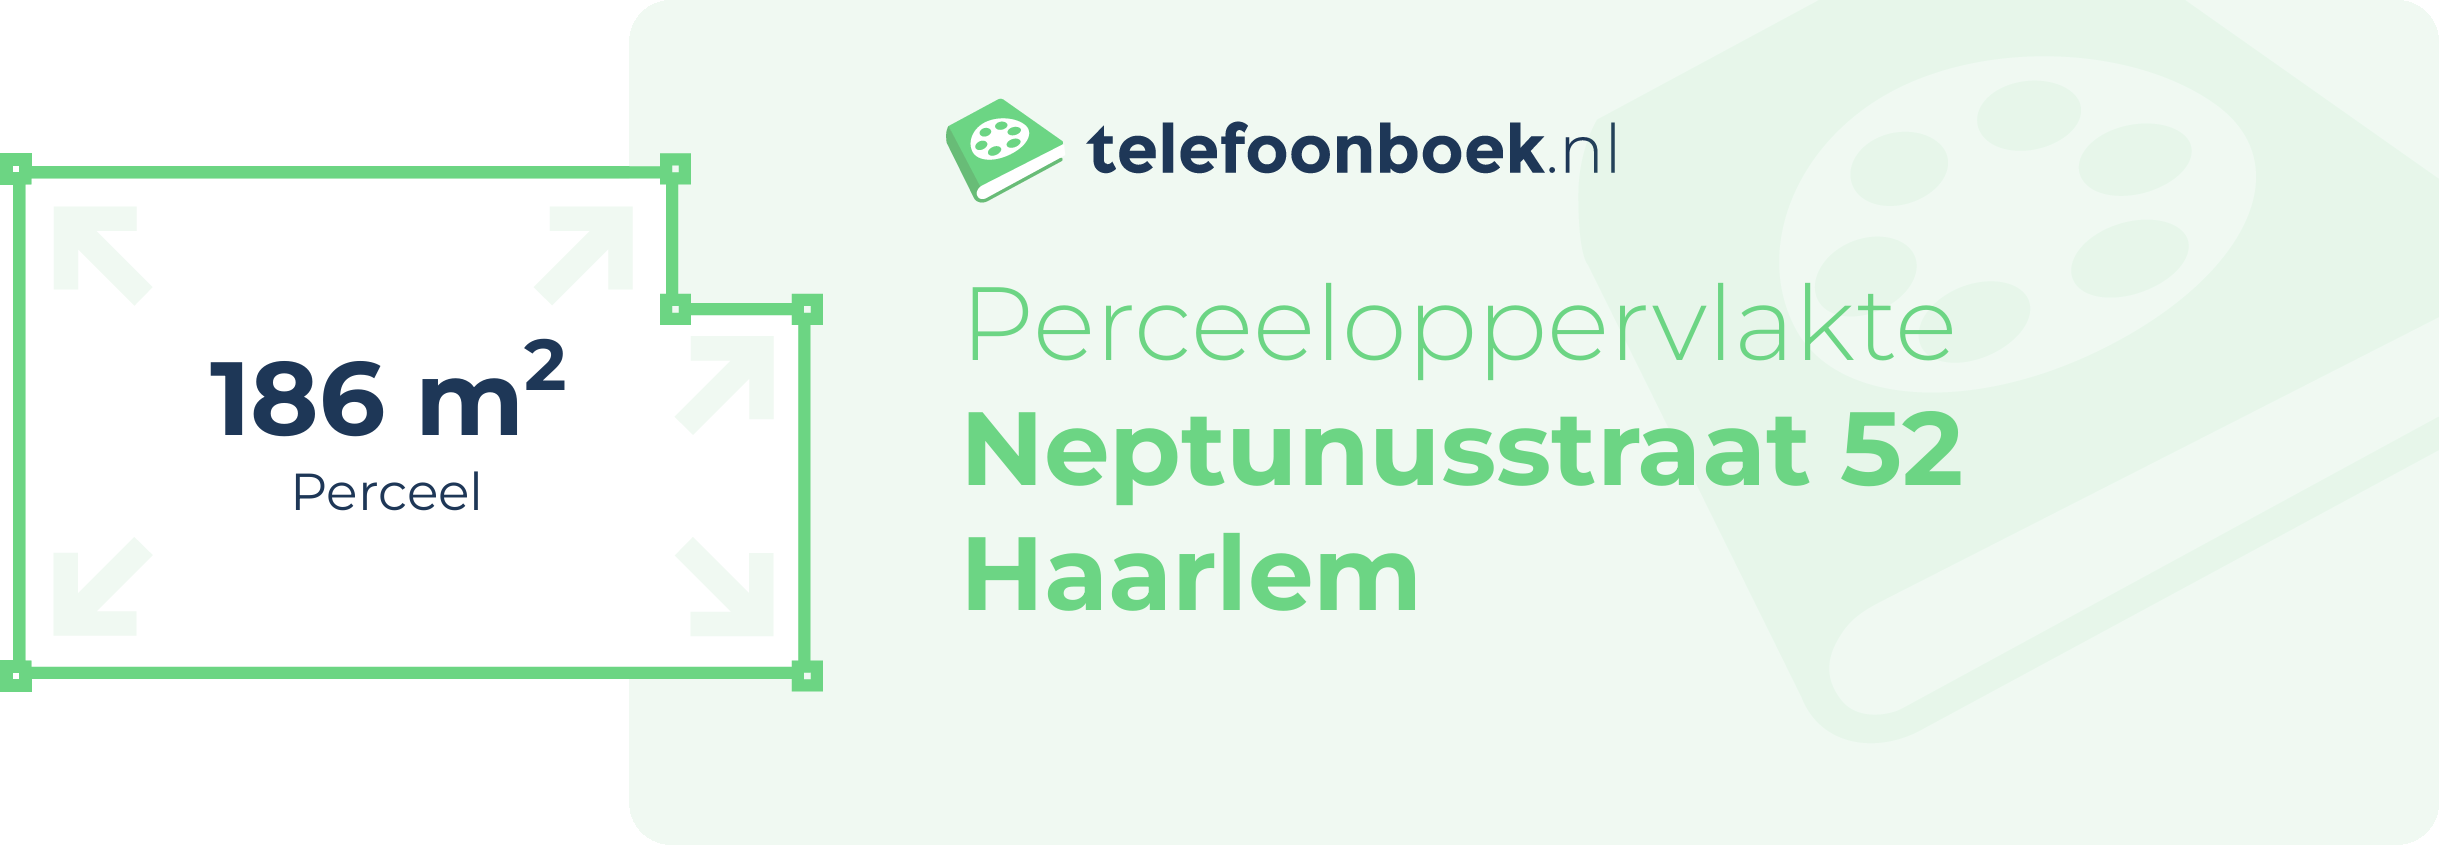 Perceeloppervlakte Neptunusstraat 52 Haarlem